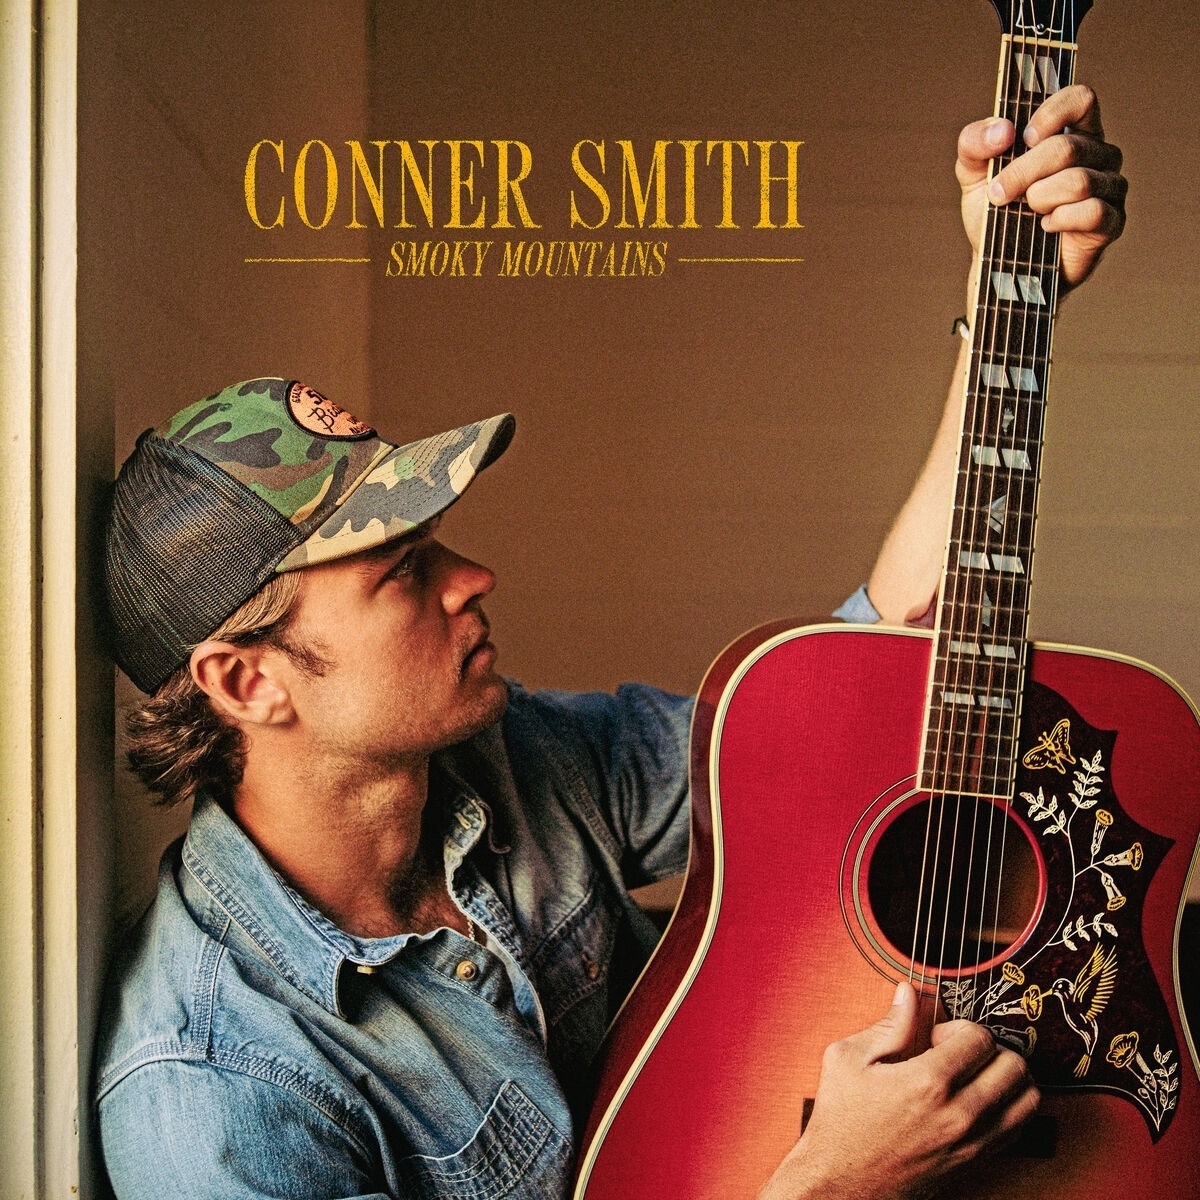 Smoky Mountains - Conner Smith. (CD)